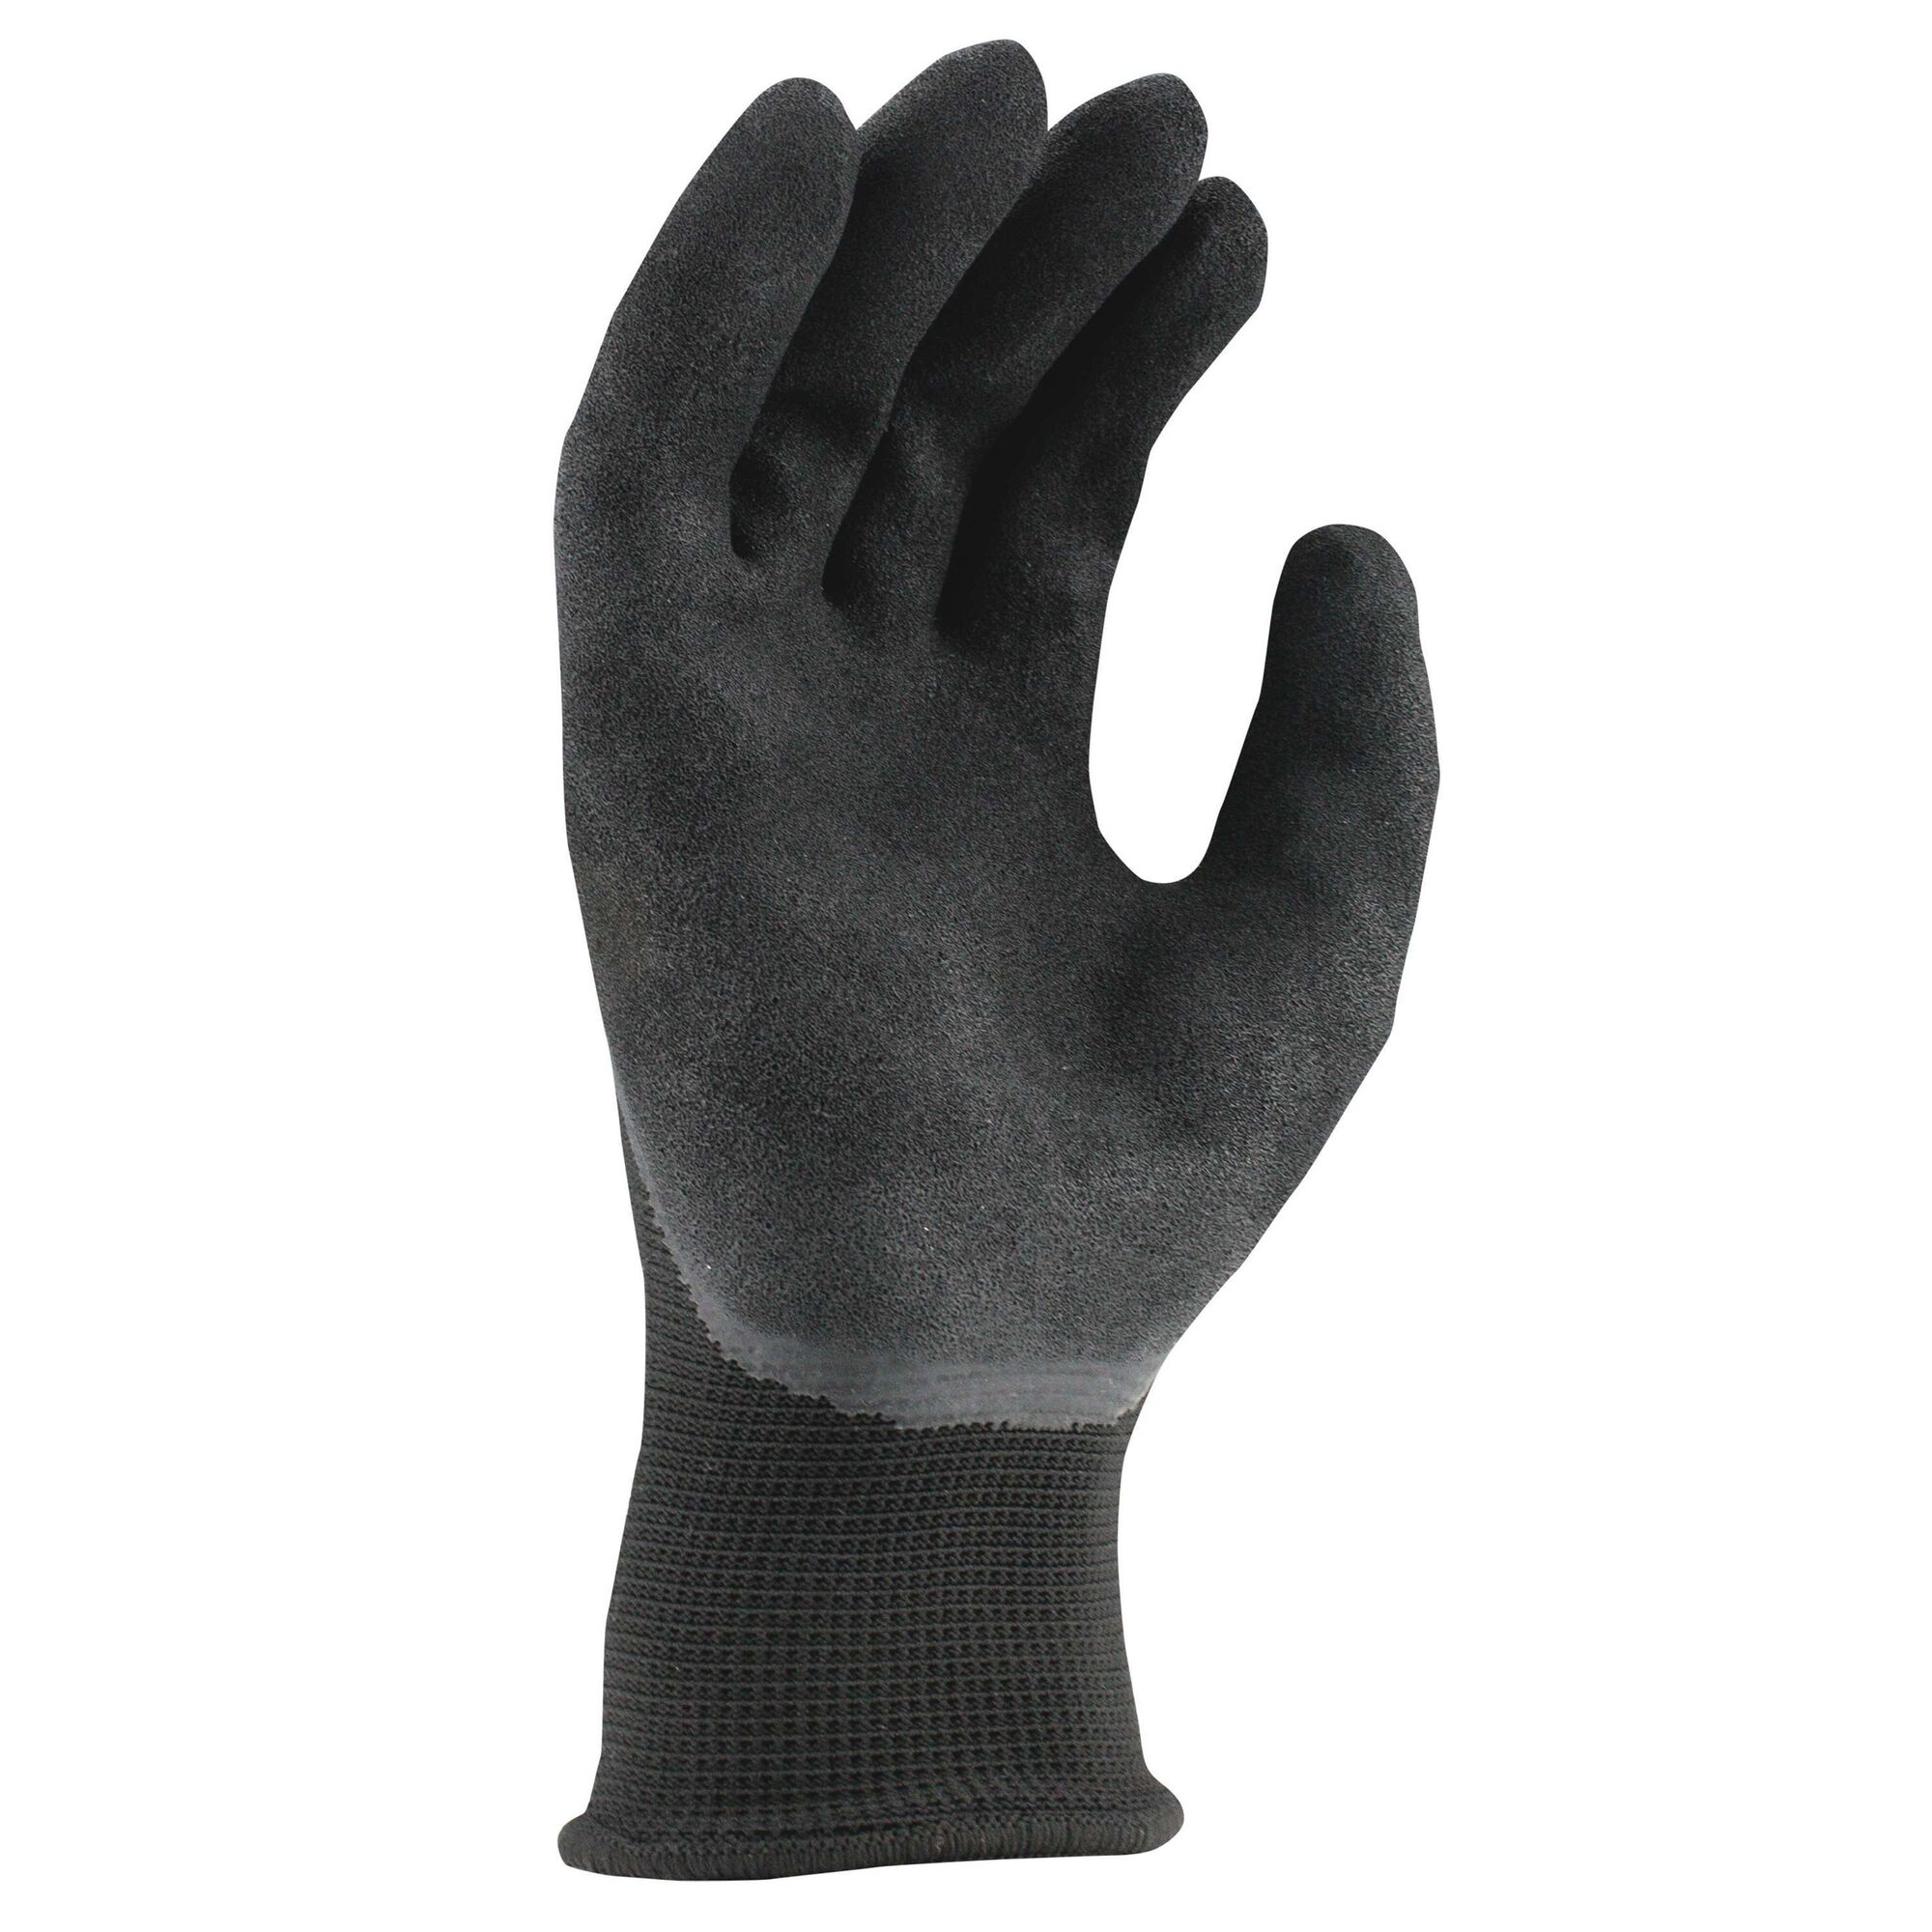 Black foam latex dip glove.